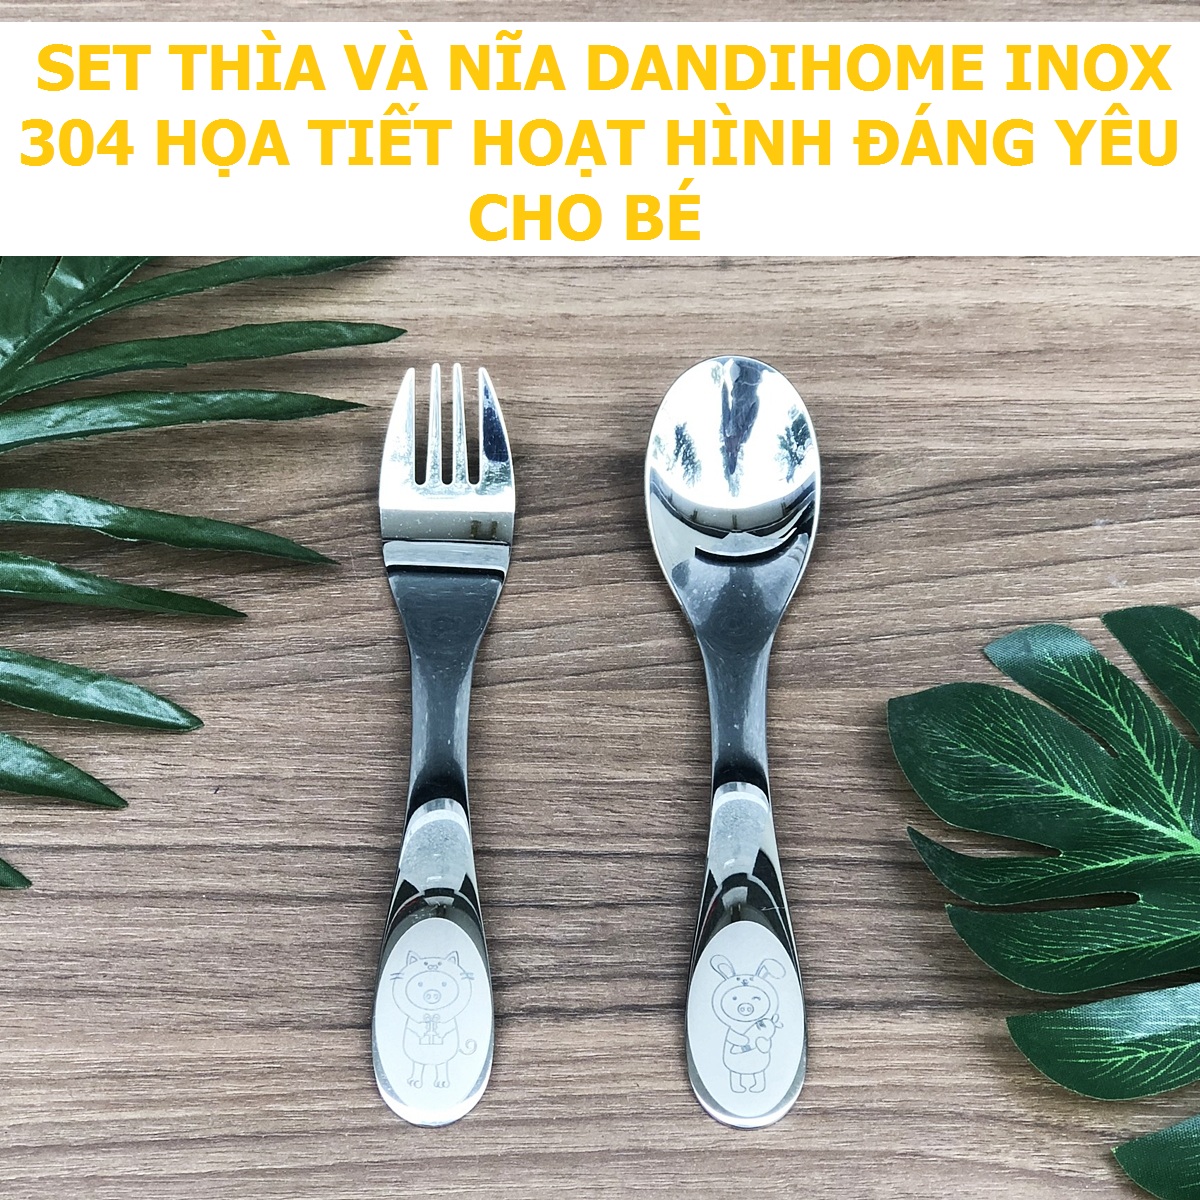 bộ dao thìa nĩa tập ăn cho bé dandihome inox 304 cao cấp - có các lựa chọn 3